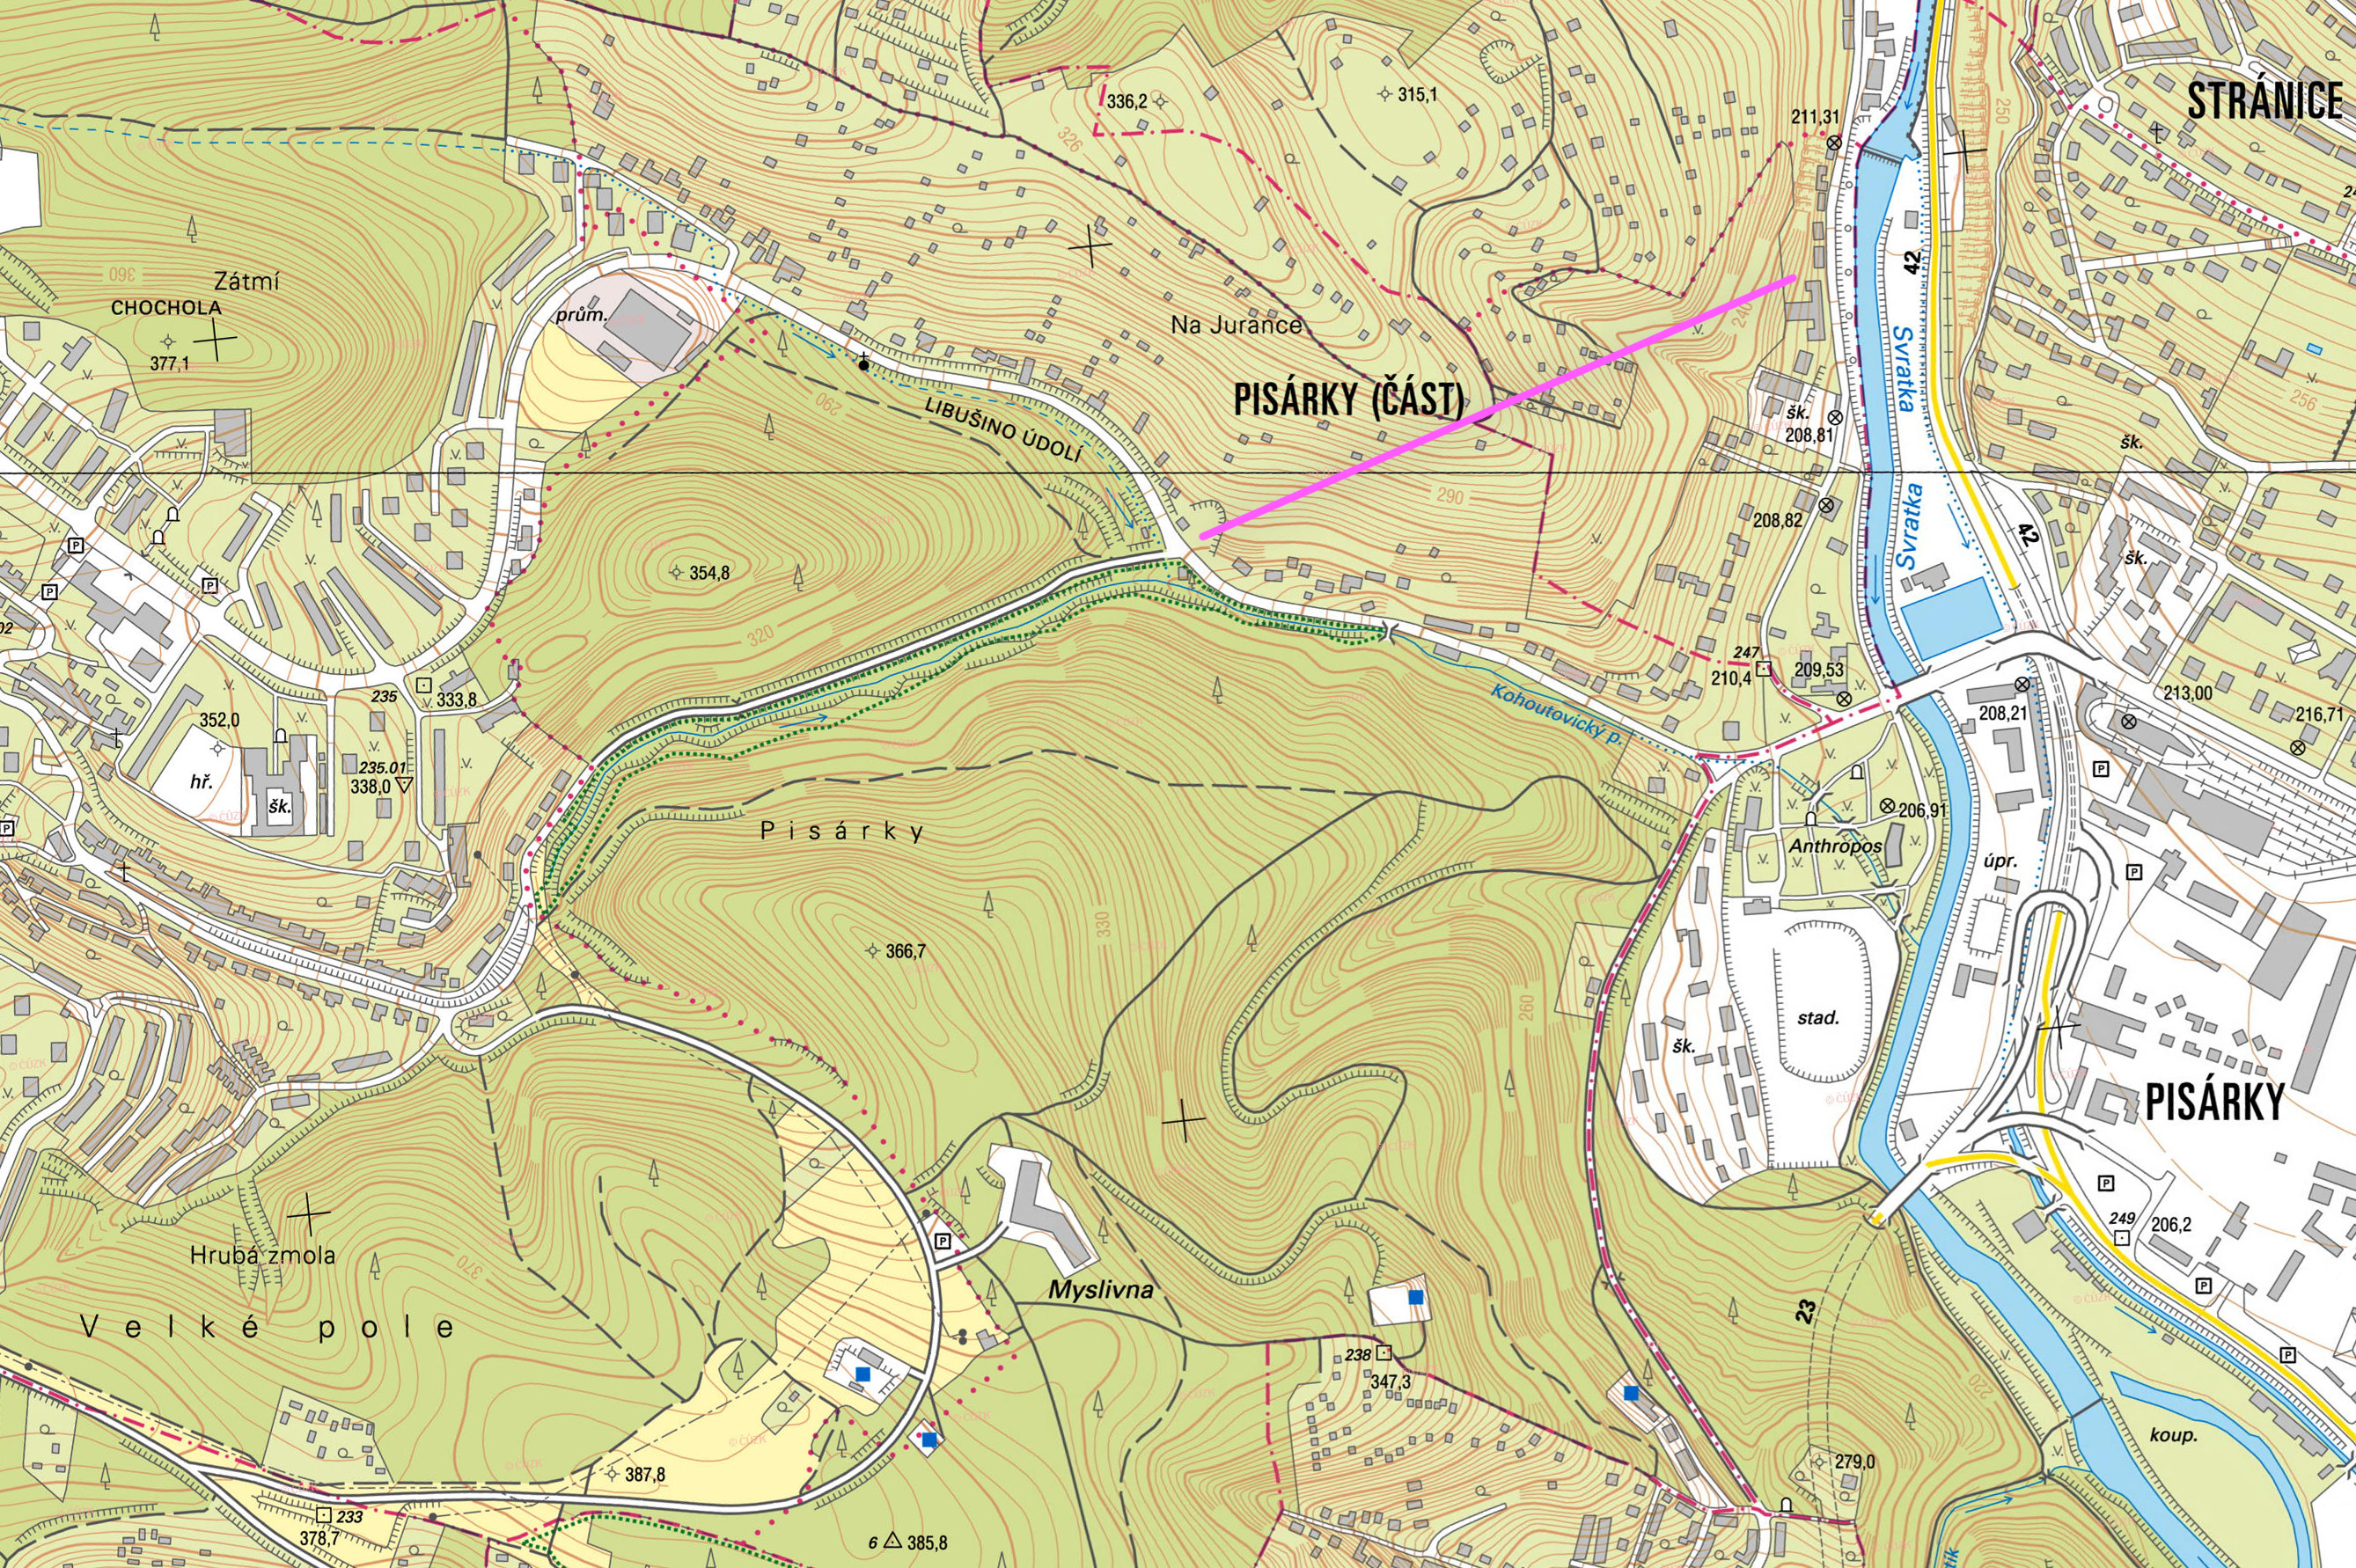 Nejnižší část stoky B09 vedená štolou pod kopcem Jurankou je na mapce Brna vyznačena růžovou barvou.